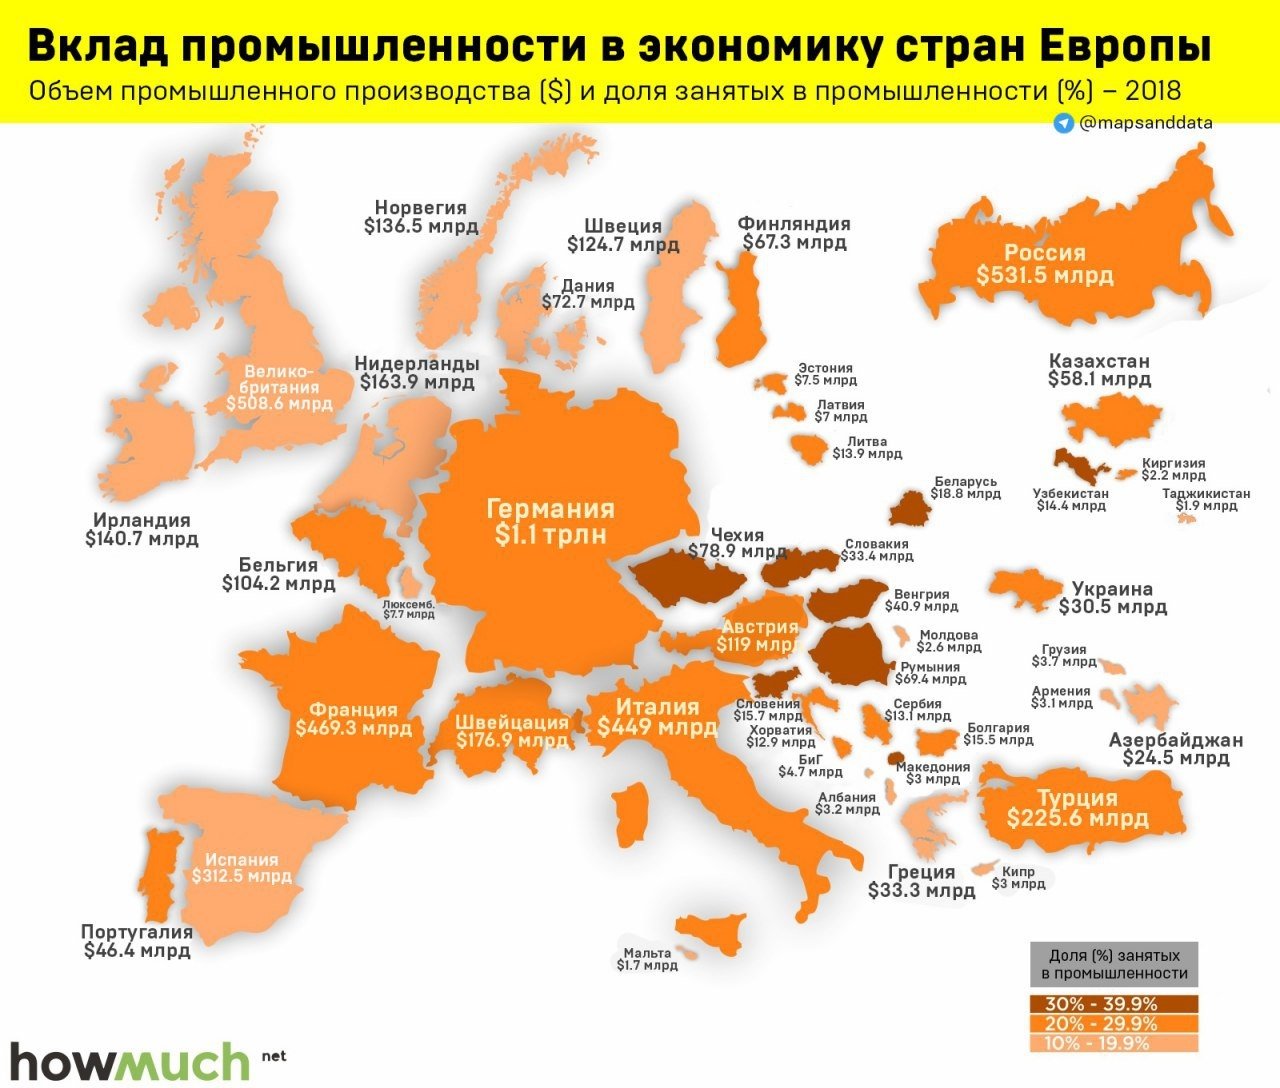 Западная европа производство. Промышленные страны Европы. Экономическое развитие стран Европы. Промышленность стран Европы. Экономическая карта Европы.